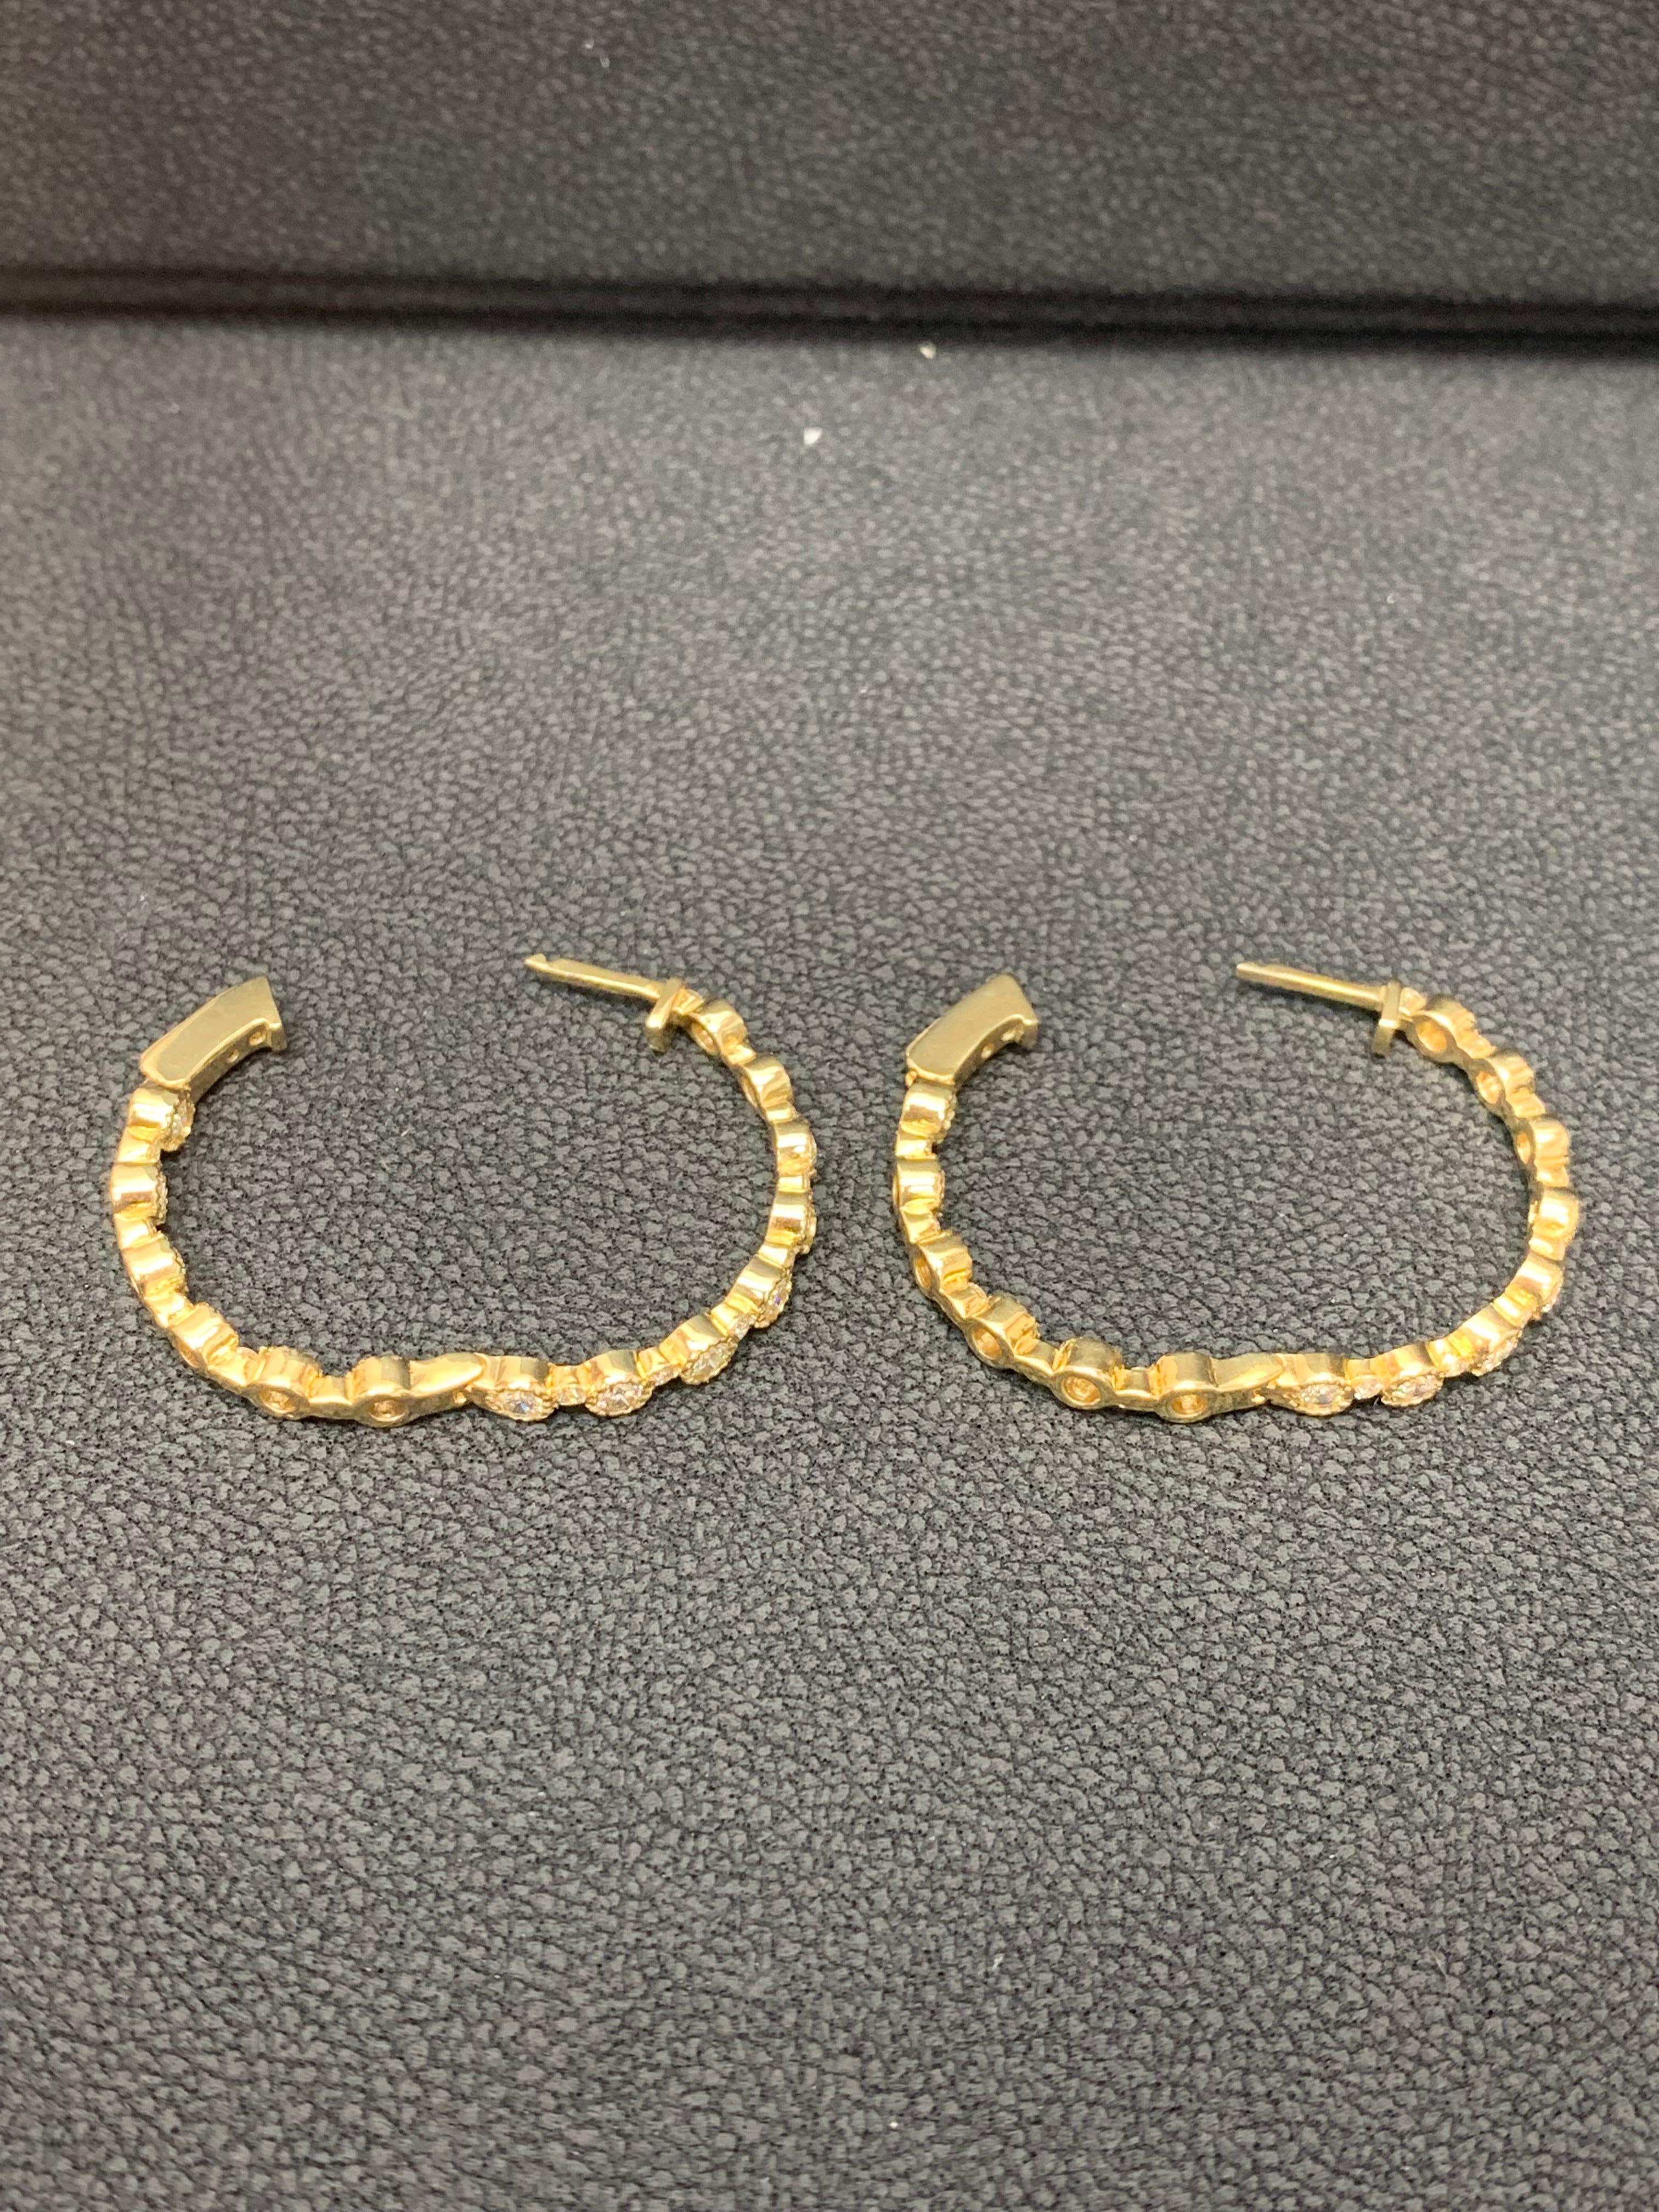 2.01 Carat Diamond Hoop Earrings in 14K Yellow Gold For Sale 3